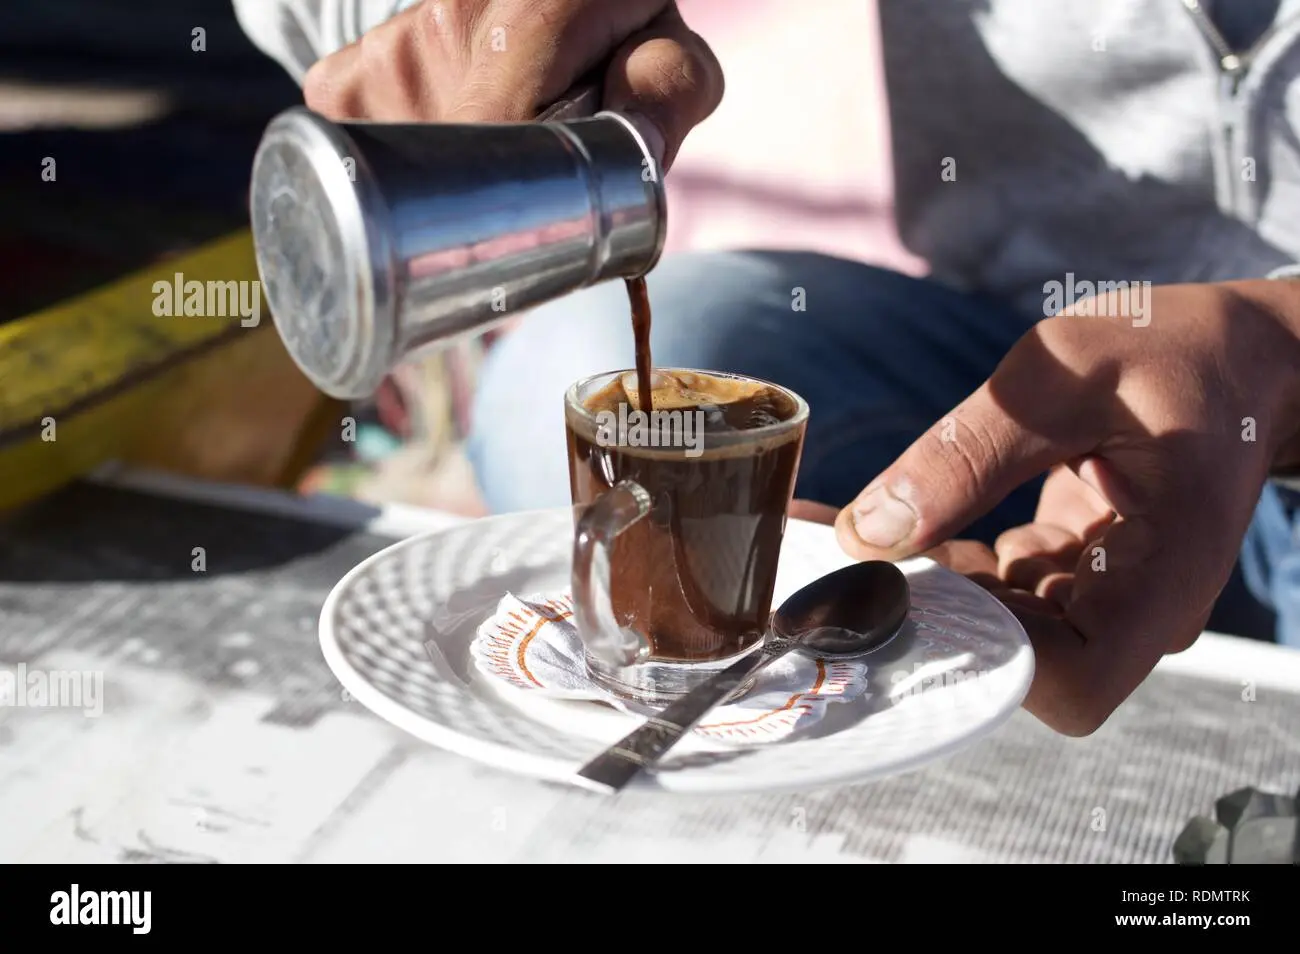 cafe egipcio - Qué es lo que más se come en Egipto